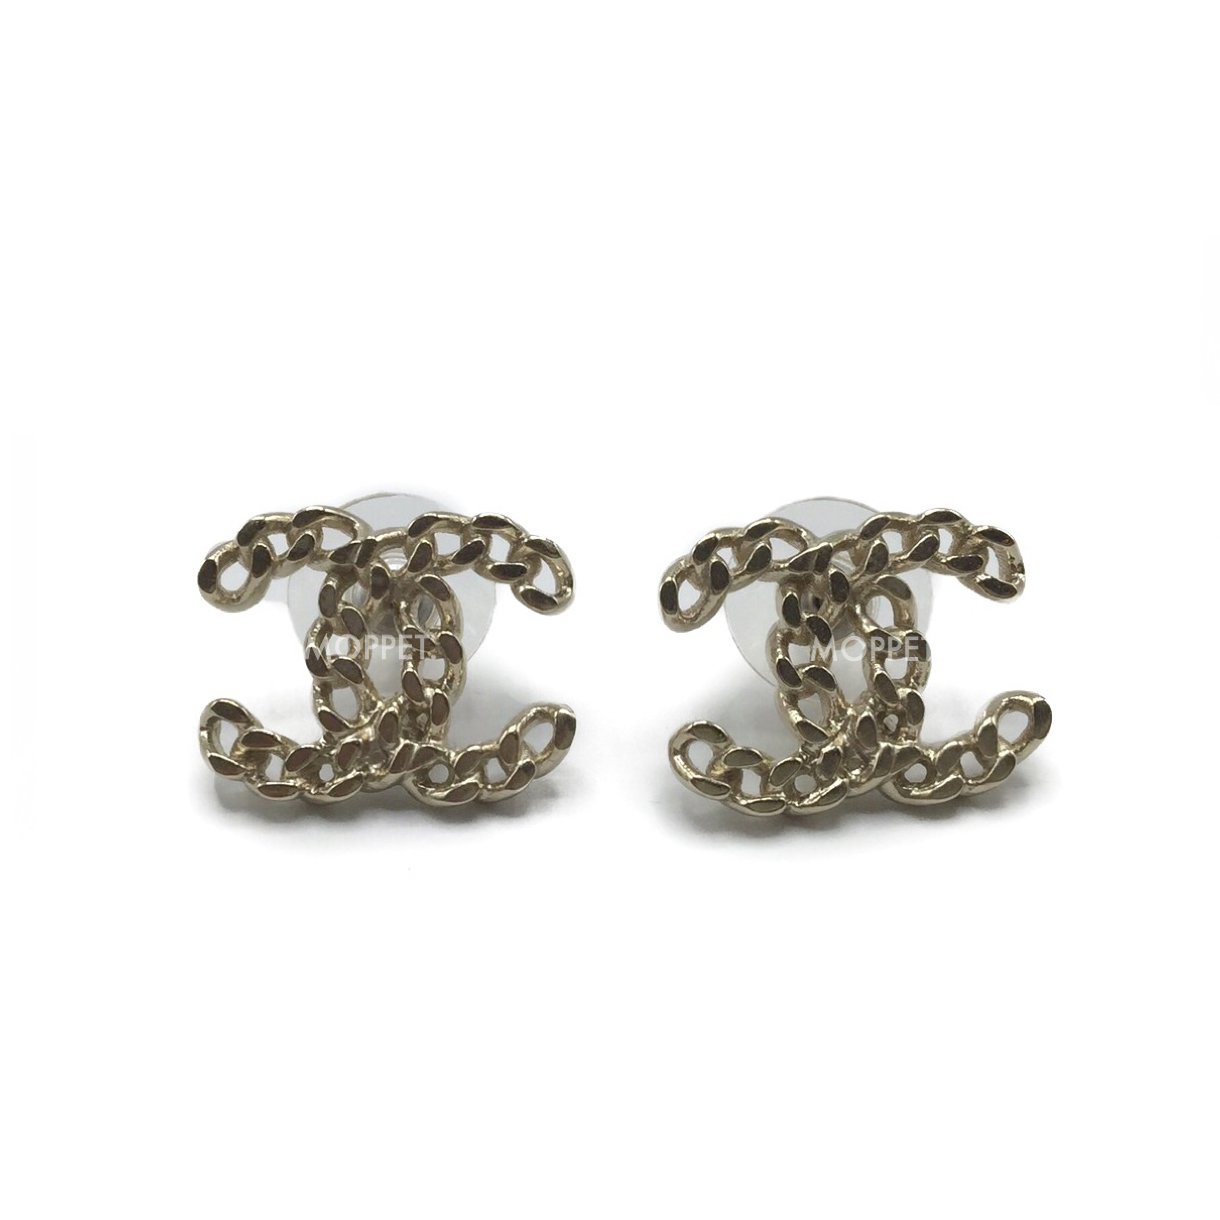 New Chanel CC Earrings 1.5 CM in Chain GHW